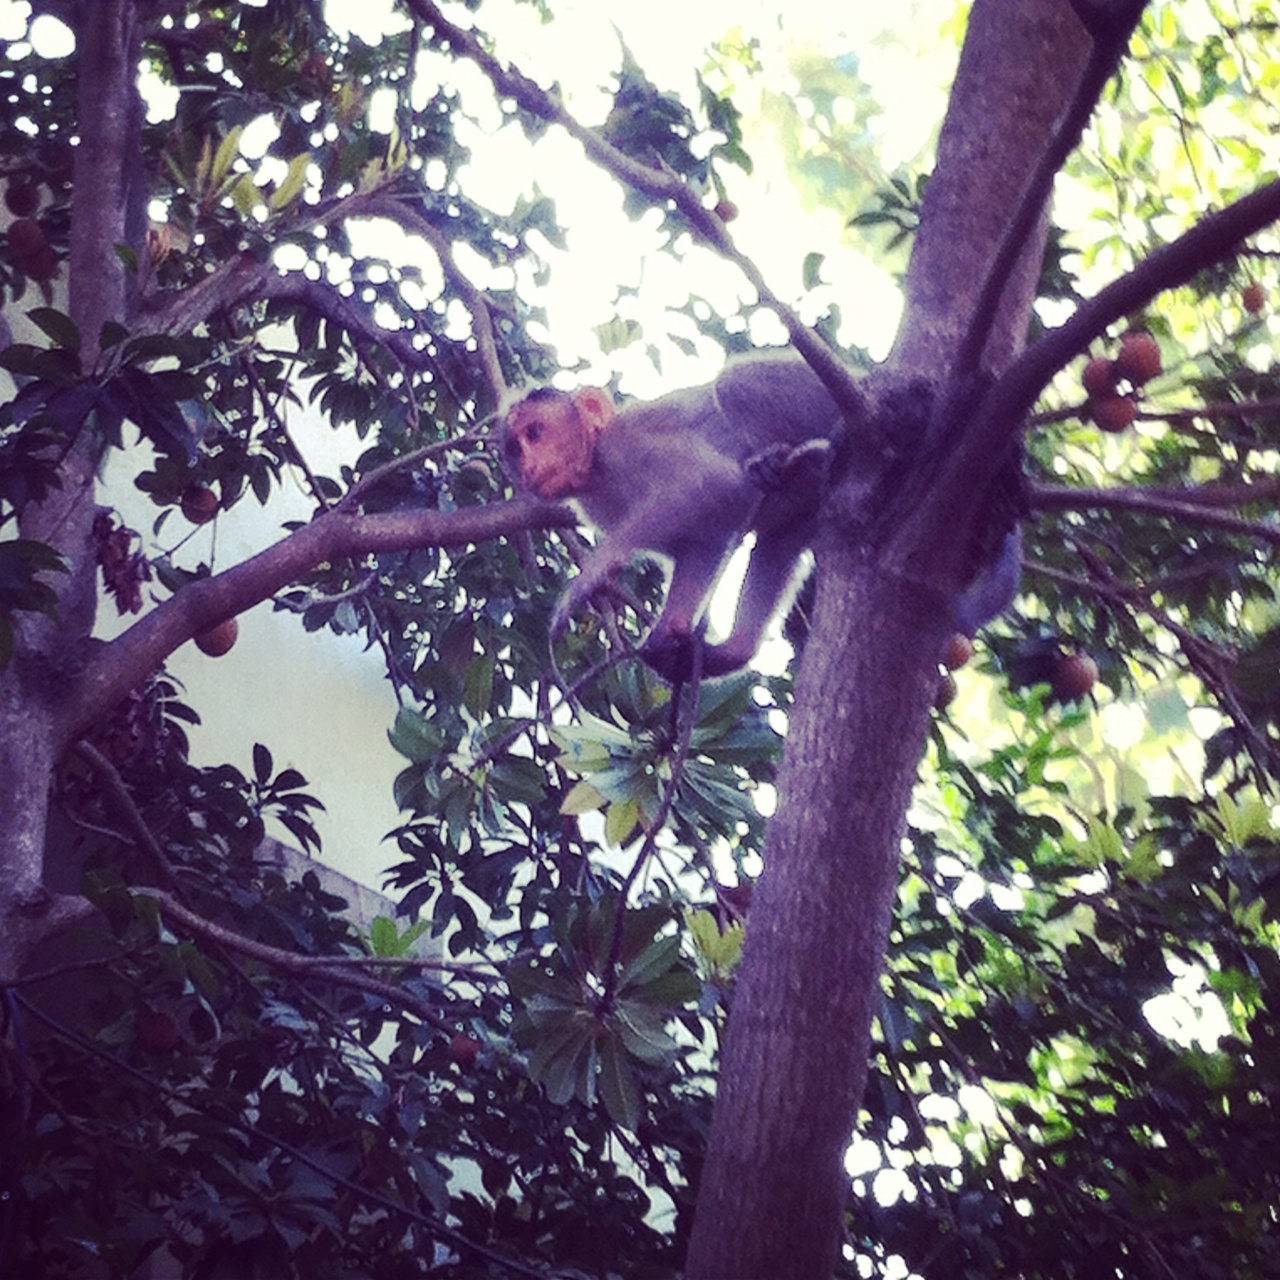 Macacos selvagens que vivem nas árvores da cidade